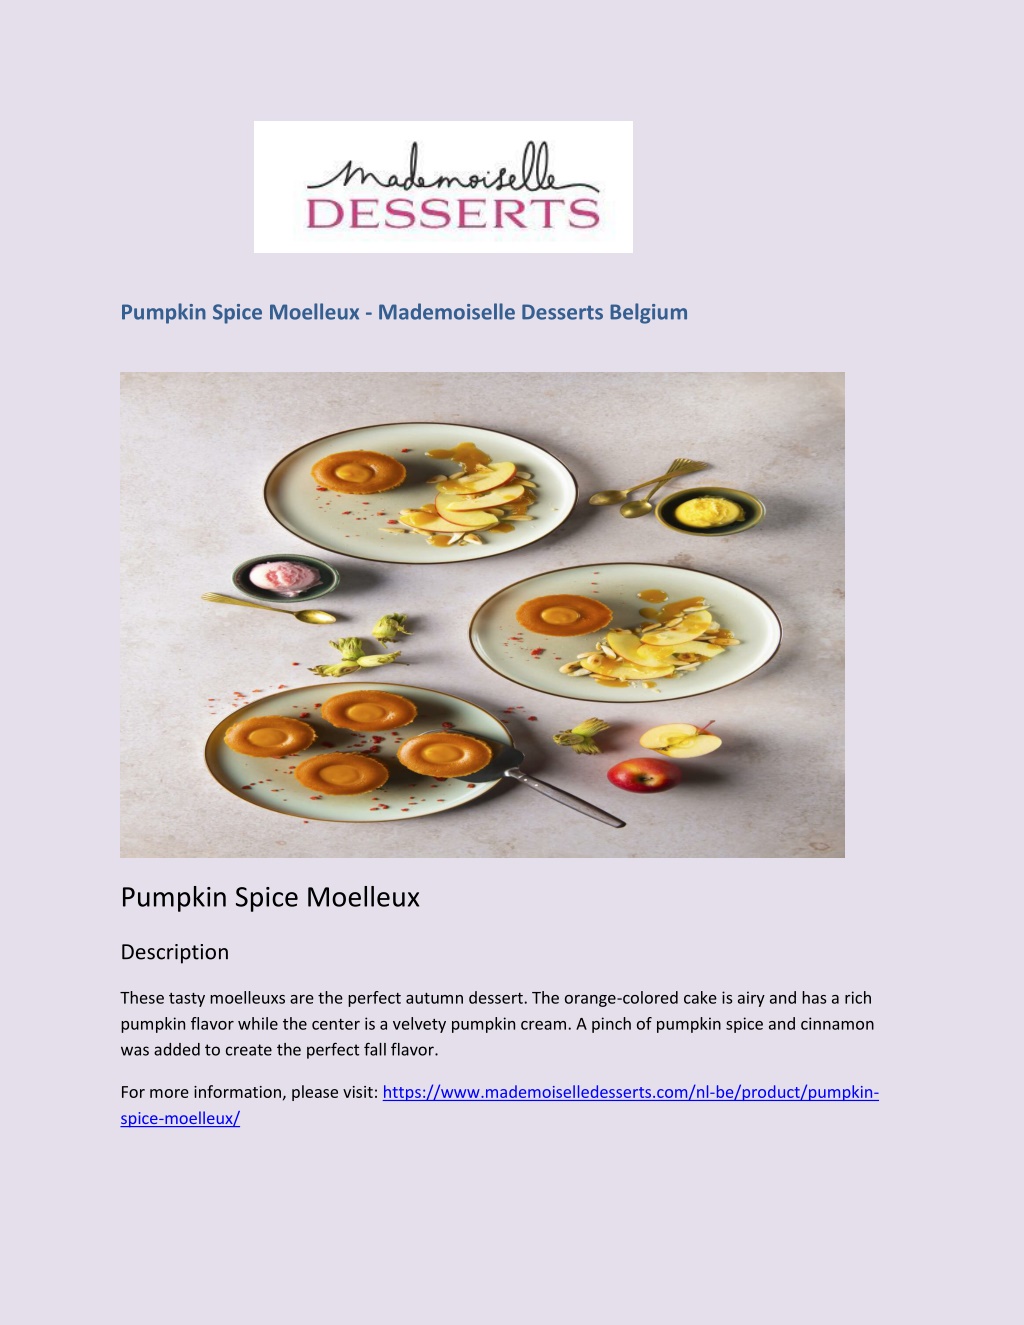 PPT - Pumpkin Spice Moelleux - Mademoiselle Desserts Belgium PowerPoint ...